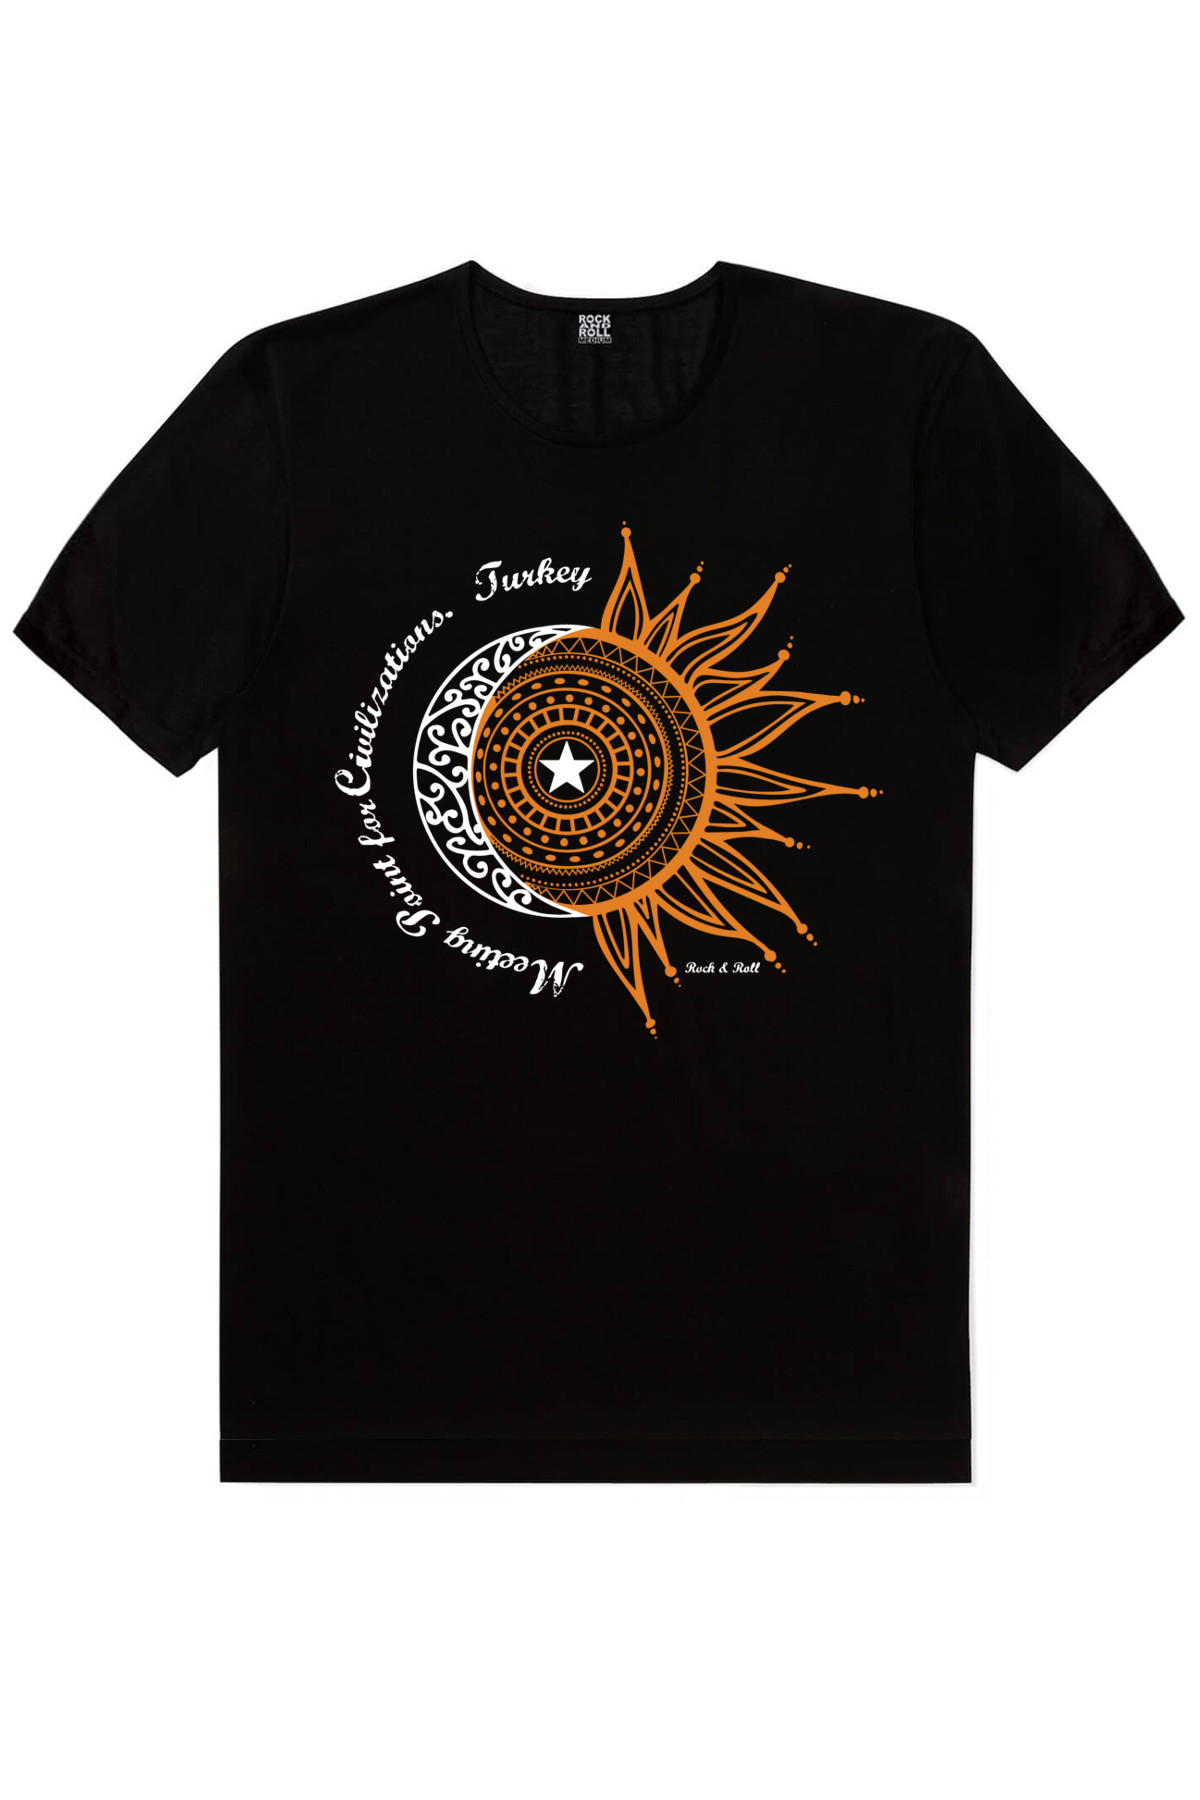 Türkiye Ay Yıldız Siyah, Türkiye Harfler Beyaz Kadın 2'li Eko Paket T-shirt